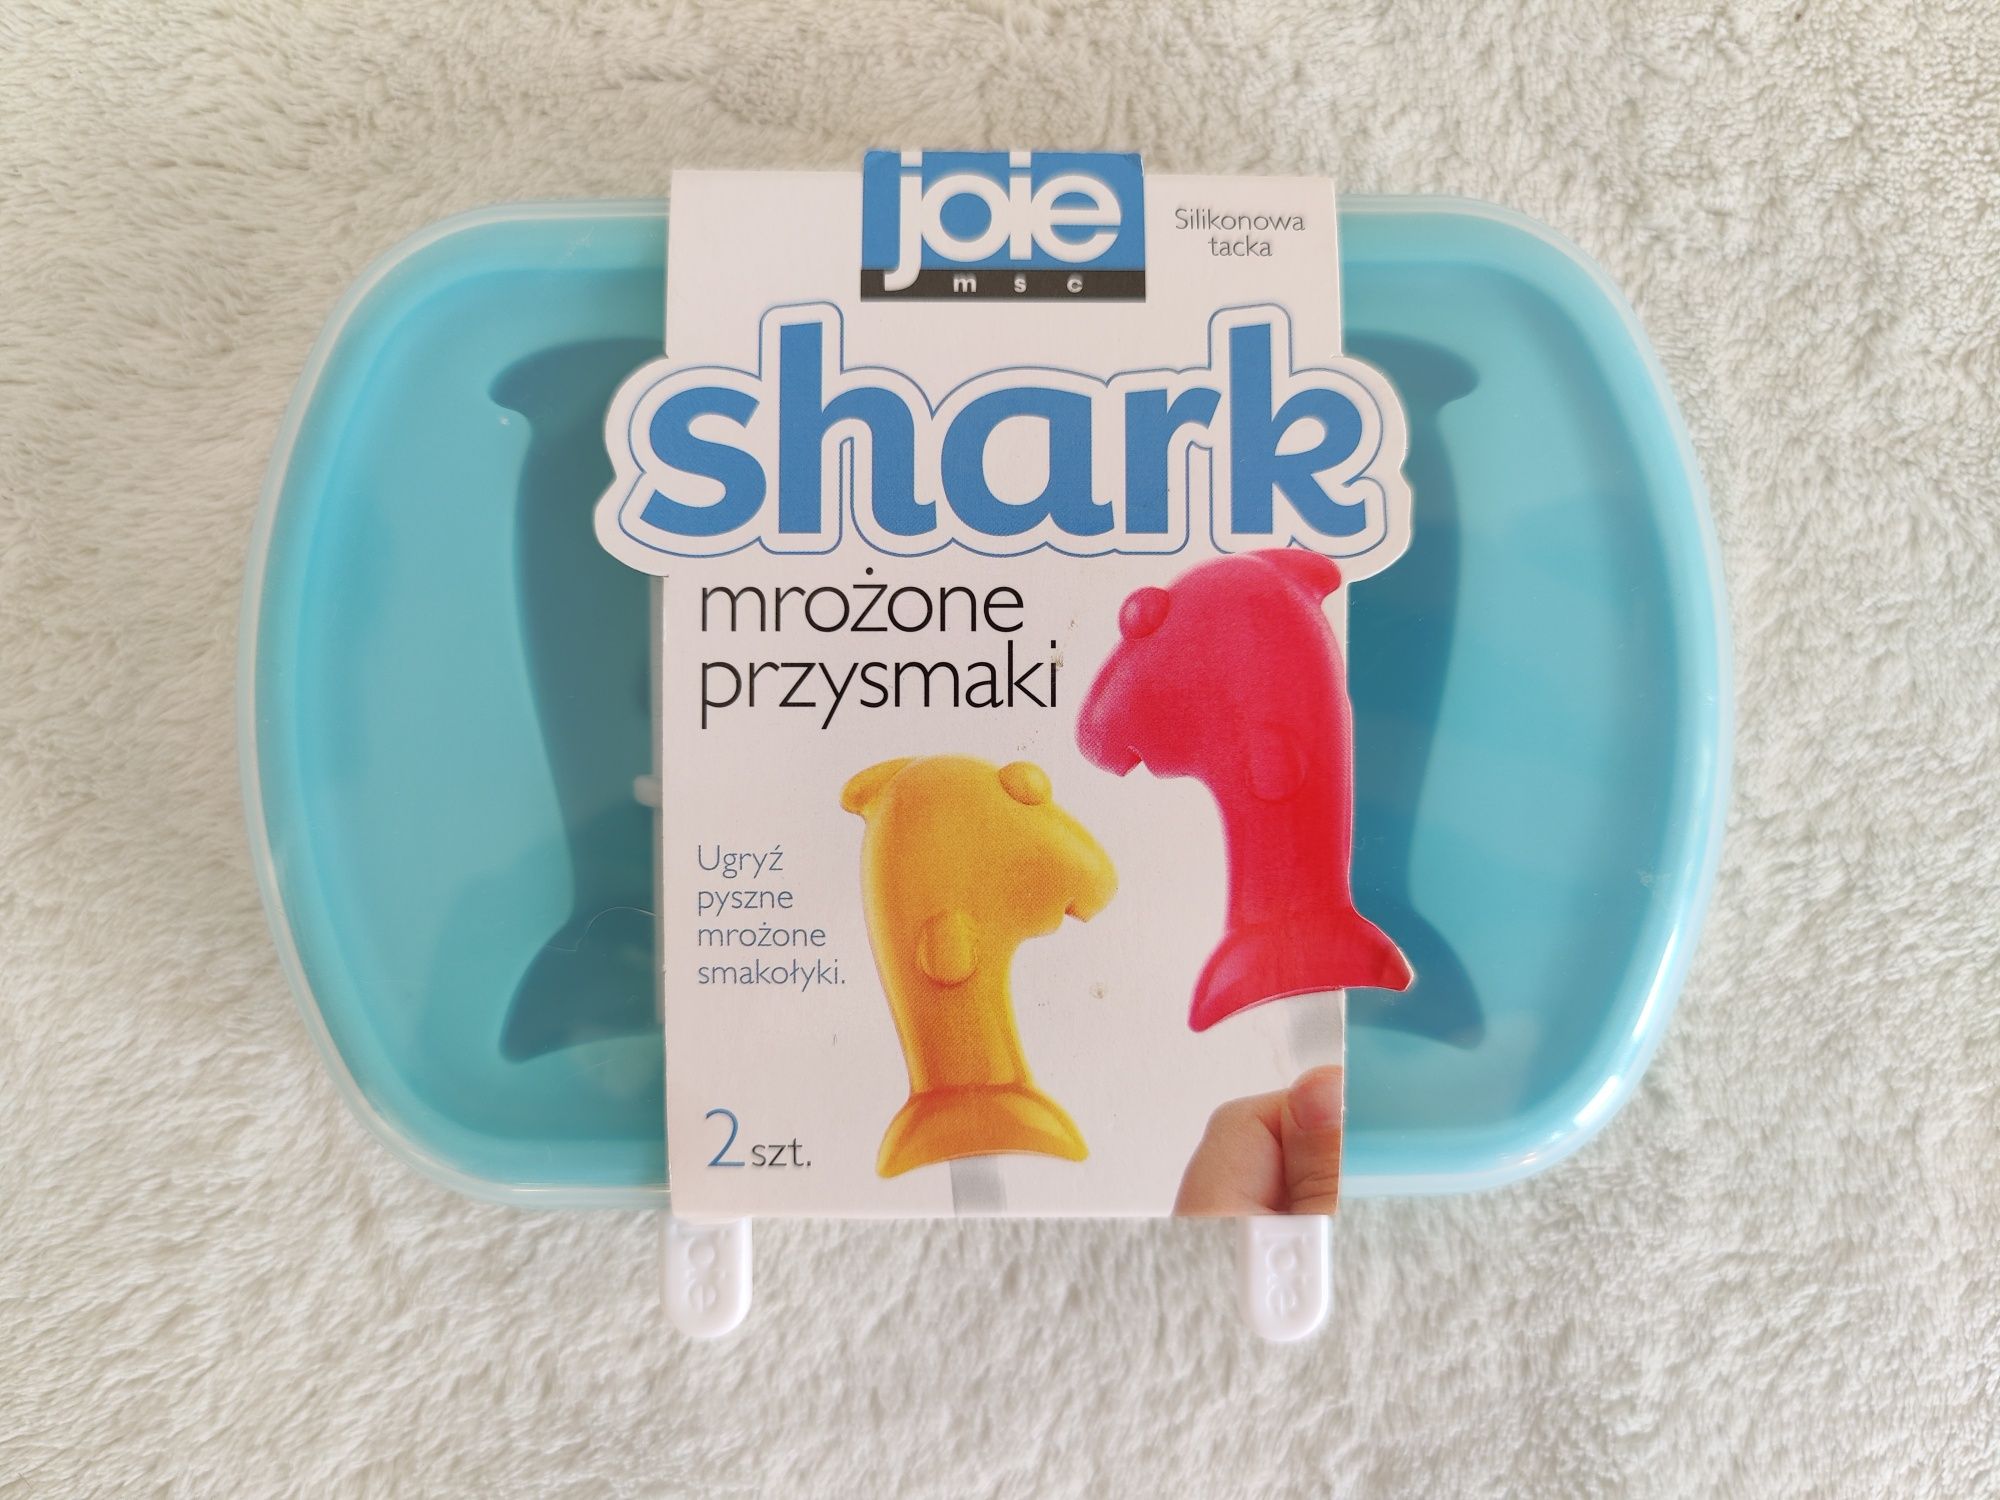 Mrożone przysmaki Joie silikonowy pojemniczek do lodów shark rekin